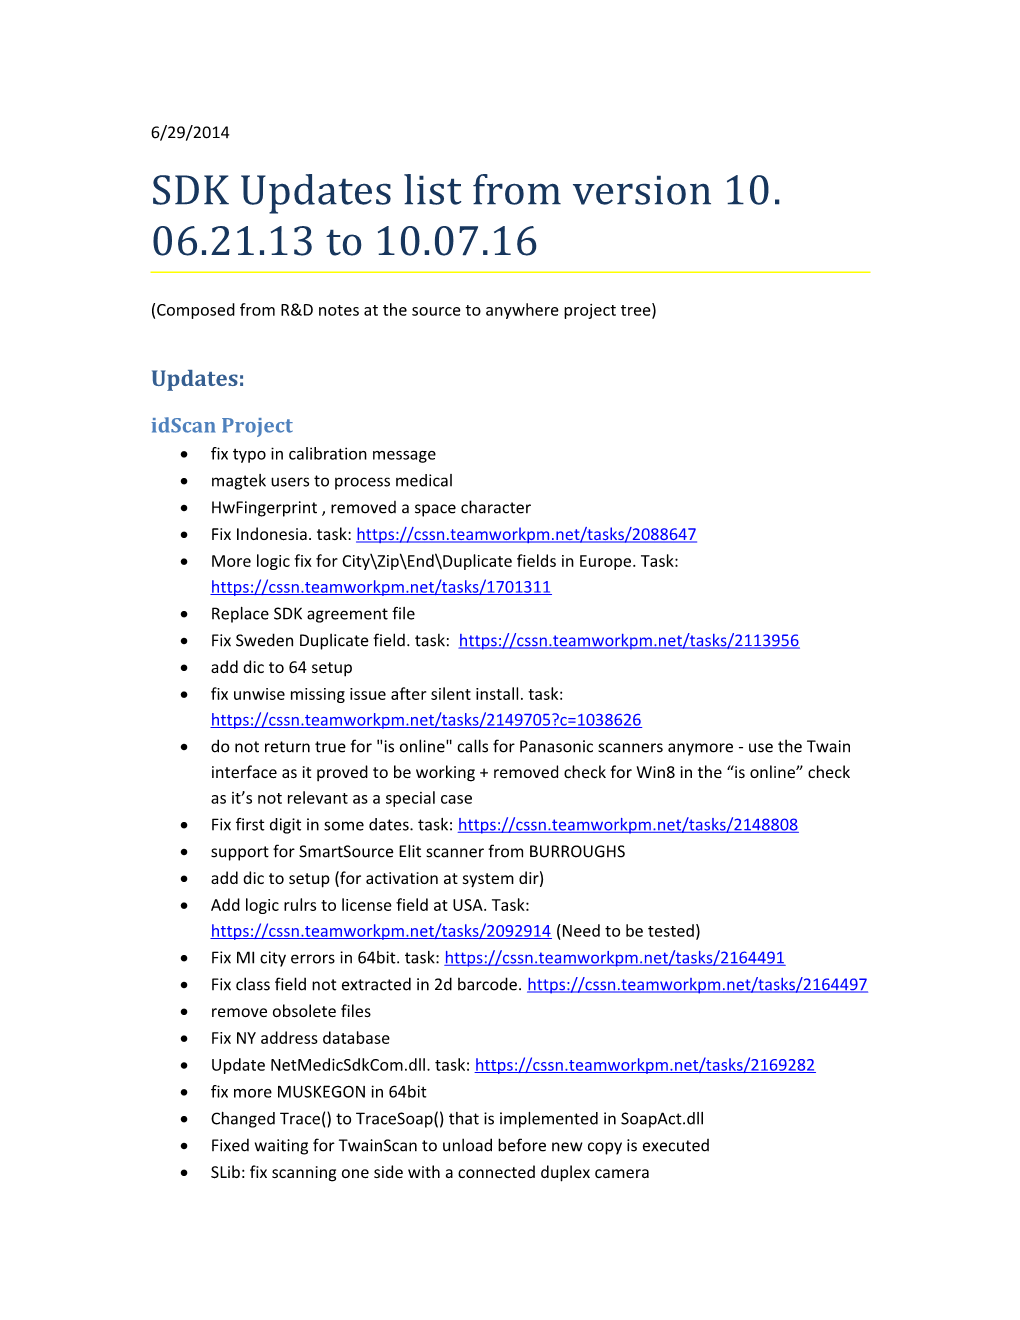 SDK Updates List from Version 10.06.21.13 to 10.07.16